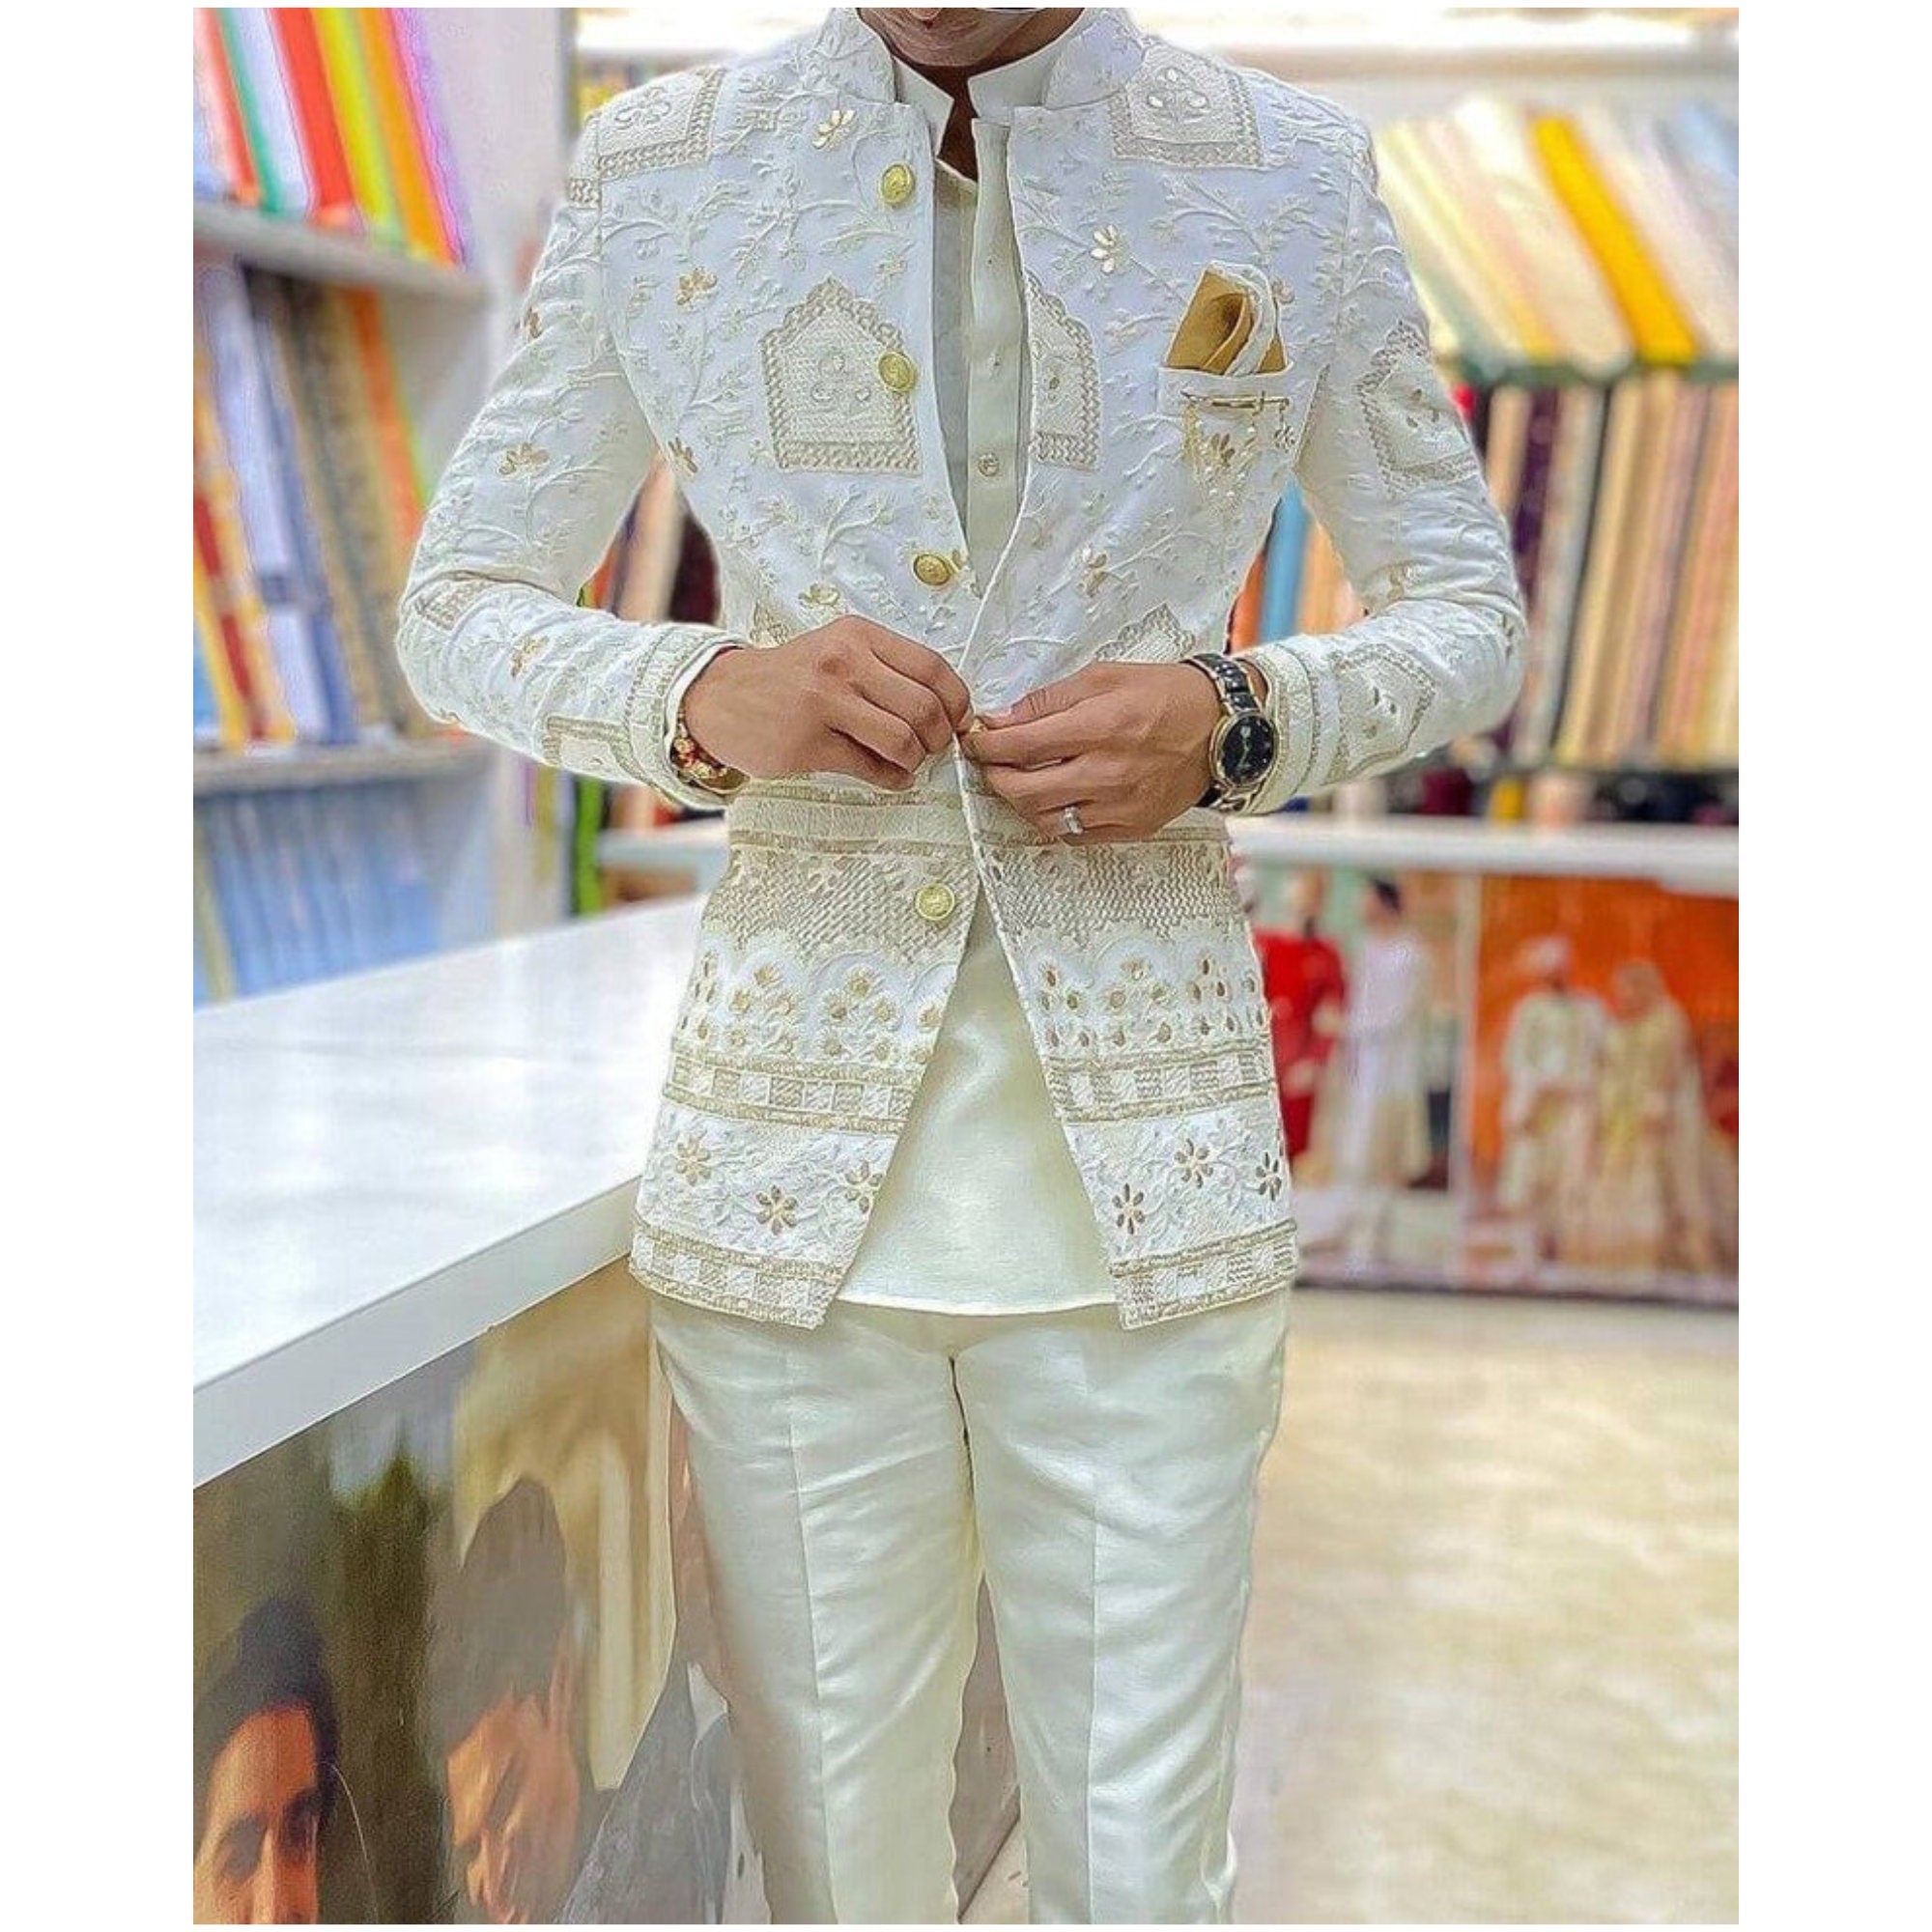 suit for men ethnic indian suit jodhpuri suit bandhgala suit mandarin suit  men | eBay